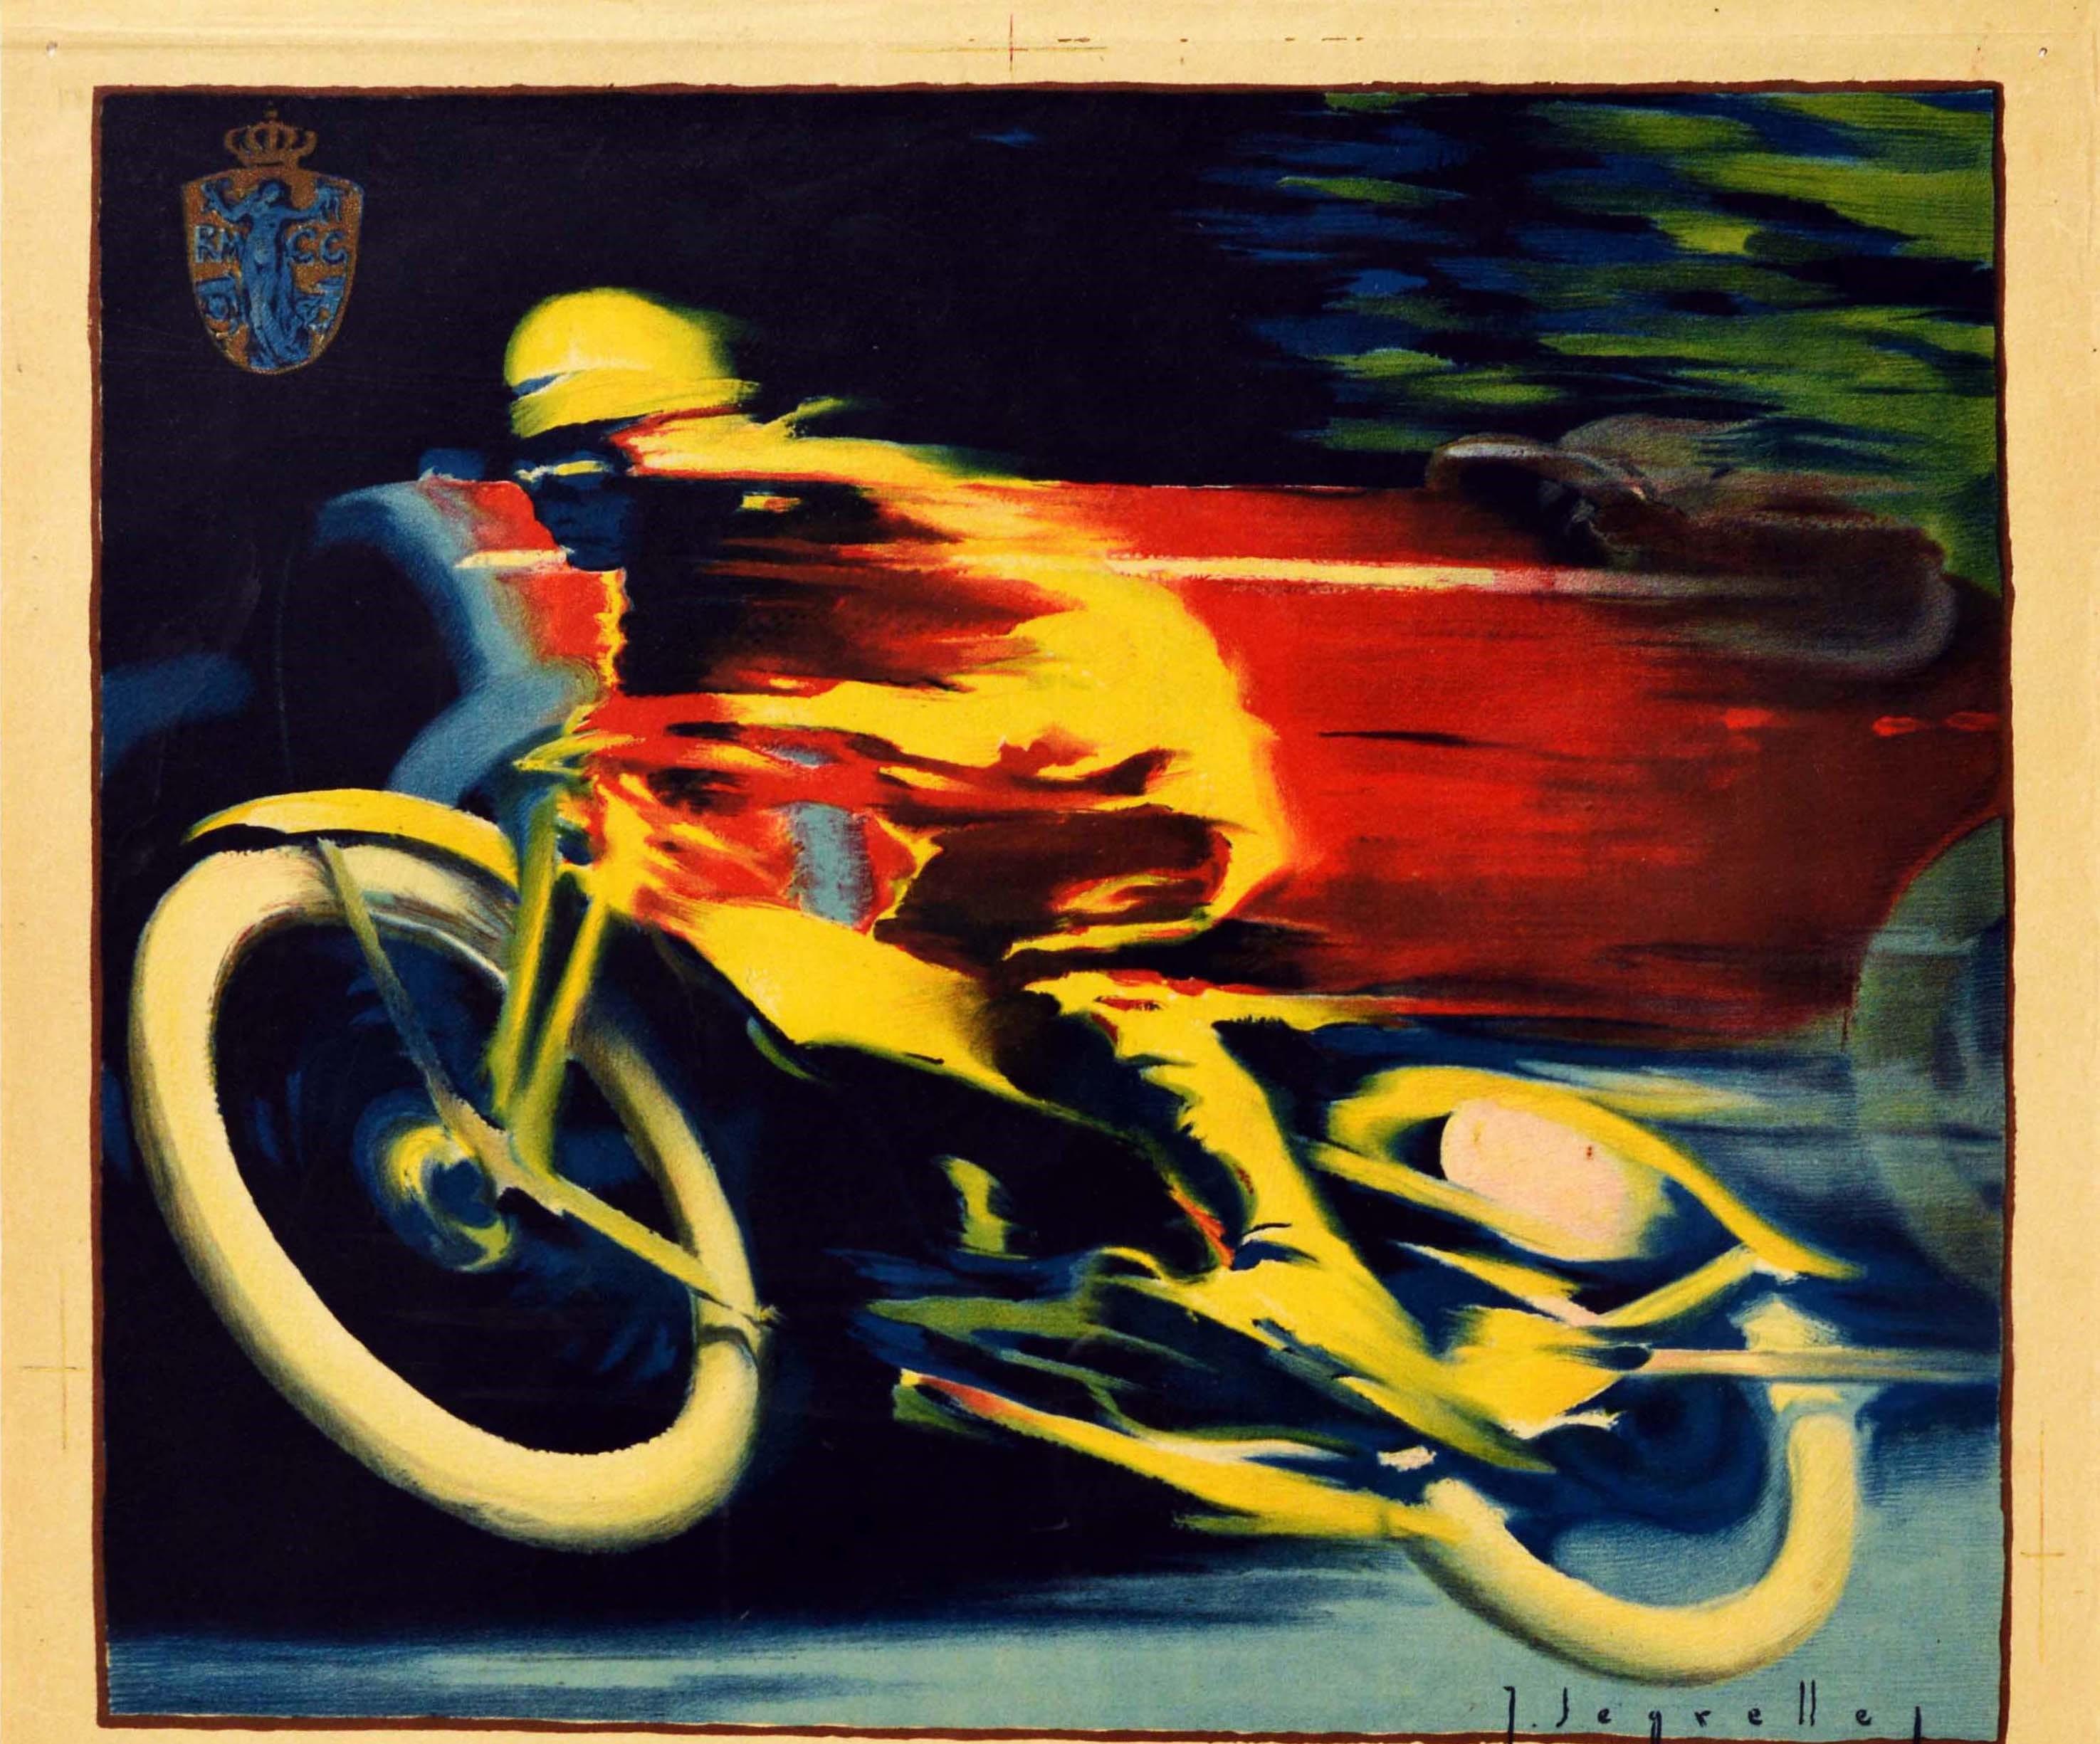 Affiche originale de sport automobile vintage pour le II Gran Premio de Motocicletas y Sidecars y IV Gran Premio de Autociclos del Reial Moto Club de Catalunya (RMCC ; fondé en 1916) / II Motorcycle Grand Prix and Sidecars and the IV Grand Prix of